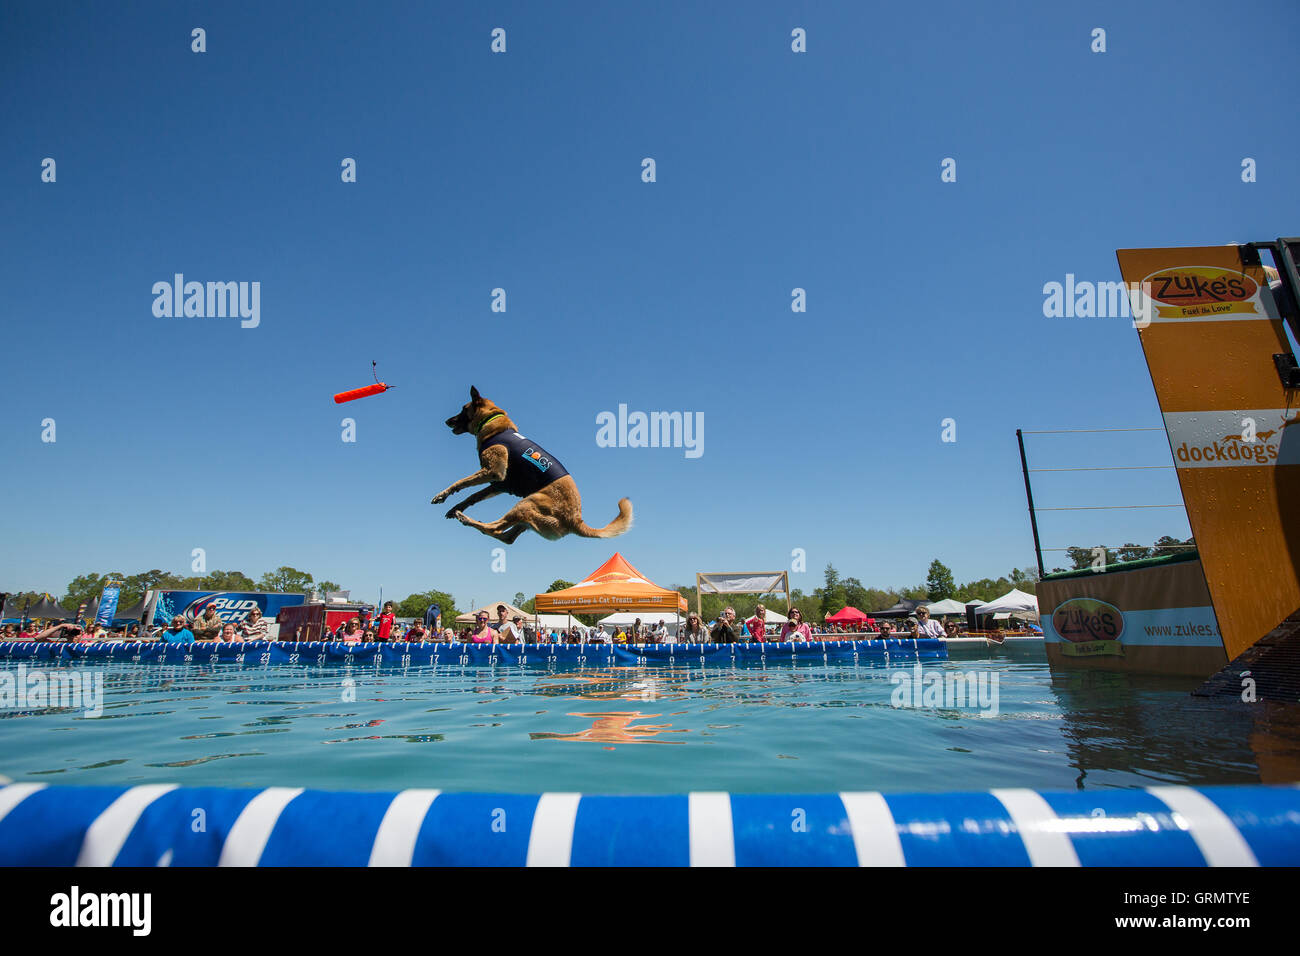 Dock di salto del cane la concorrenza a Charleston, Carolina del Sud. I cani possono saltare fino a 9 metri fuori dal dock. Foto Stock